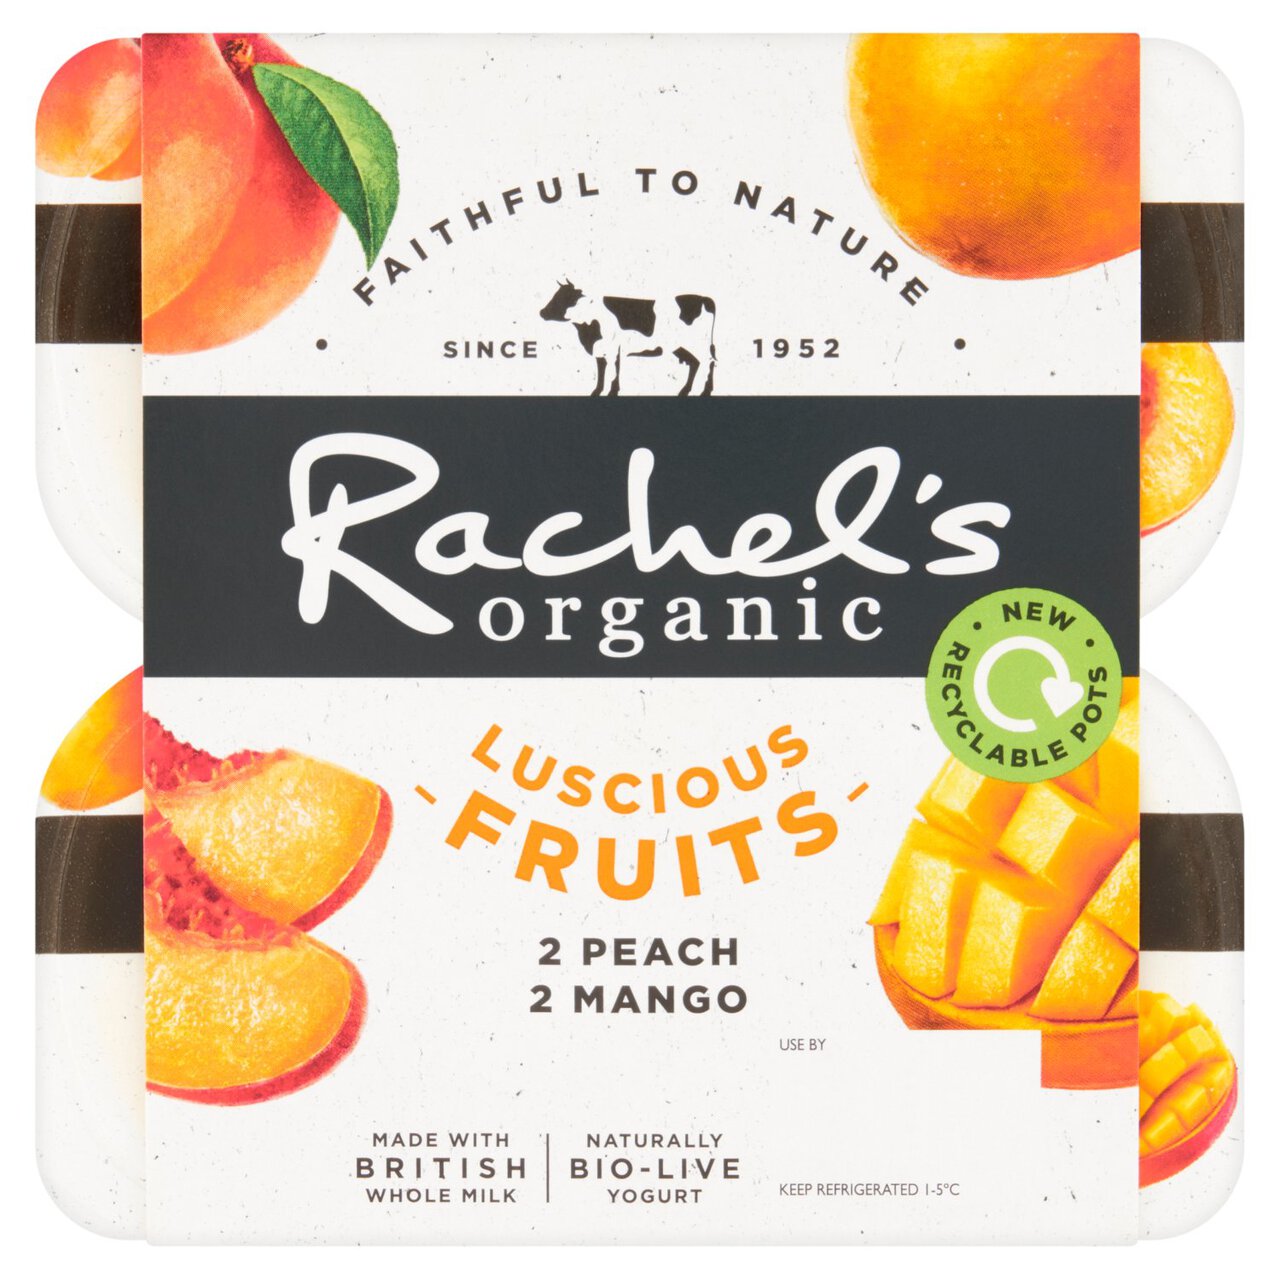 Rachel's Organic Luscious Fruits Peach & Mango 4 x 110g